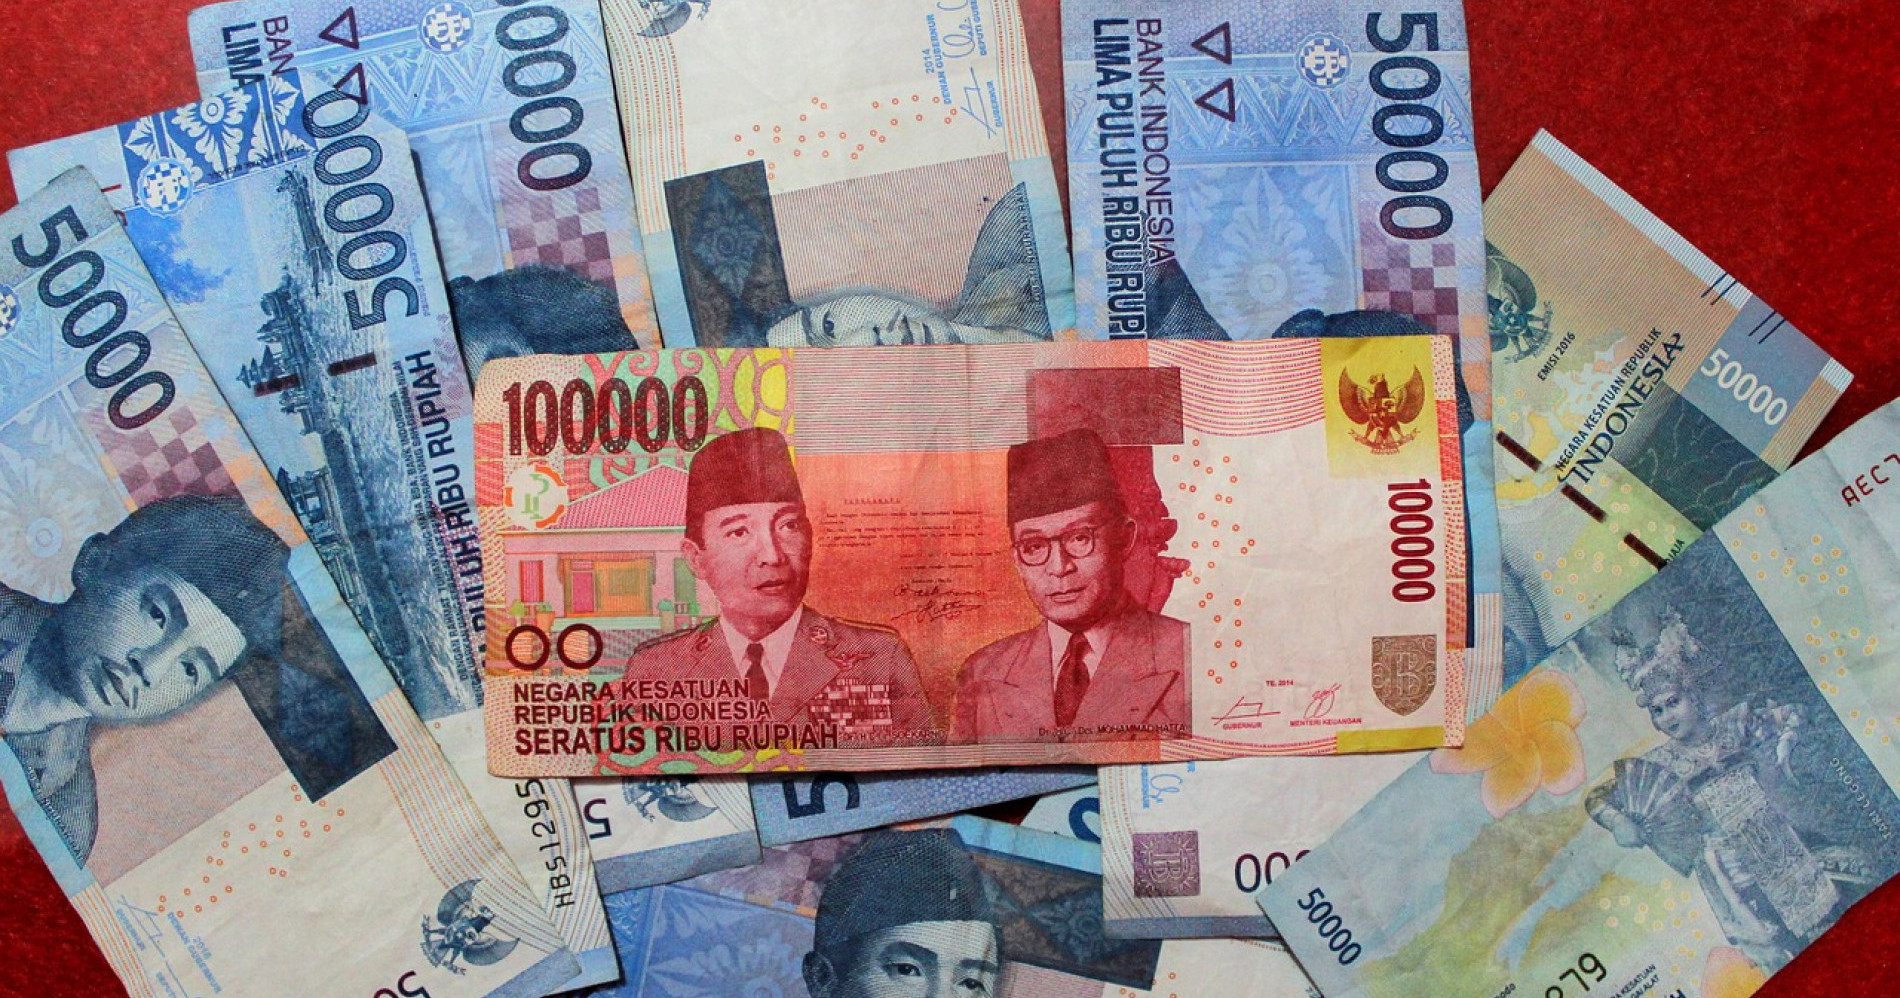 Sumber Gambar: https://pixabay.com/id/photos/uang-rupiah-gaji-ekonomi-keuangan-3431769/